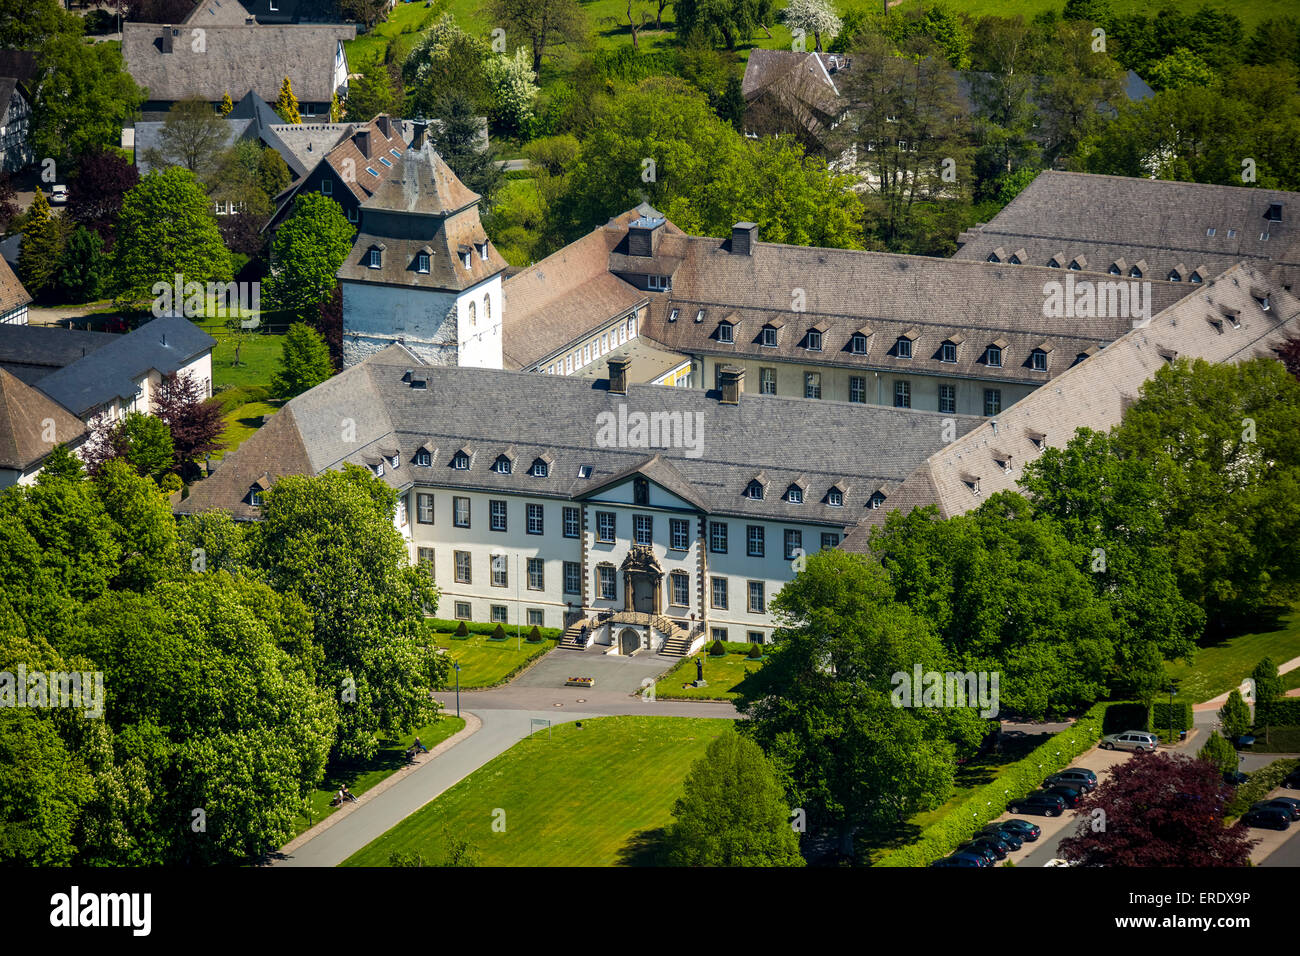 Grafschaft Schmallenberg, abbaye, Sauerland, Rhénanie du Nord-Westphalie, Allemagne Banque D'Images